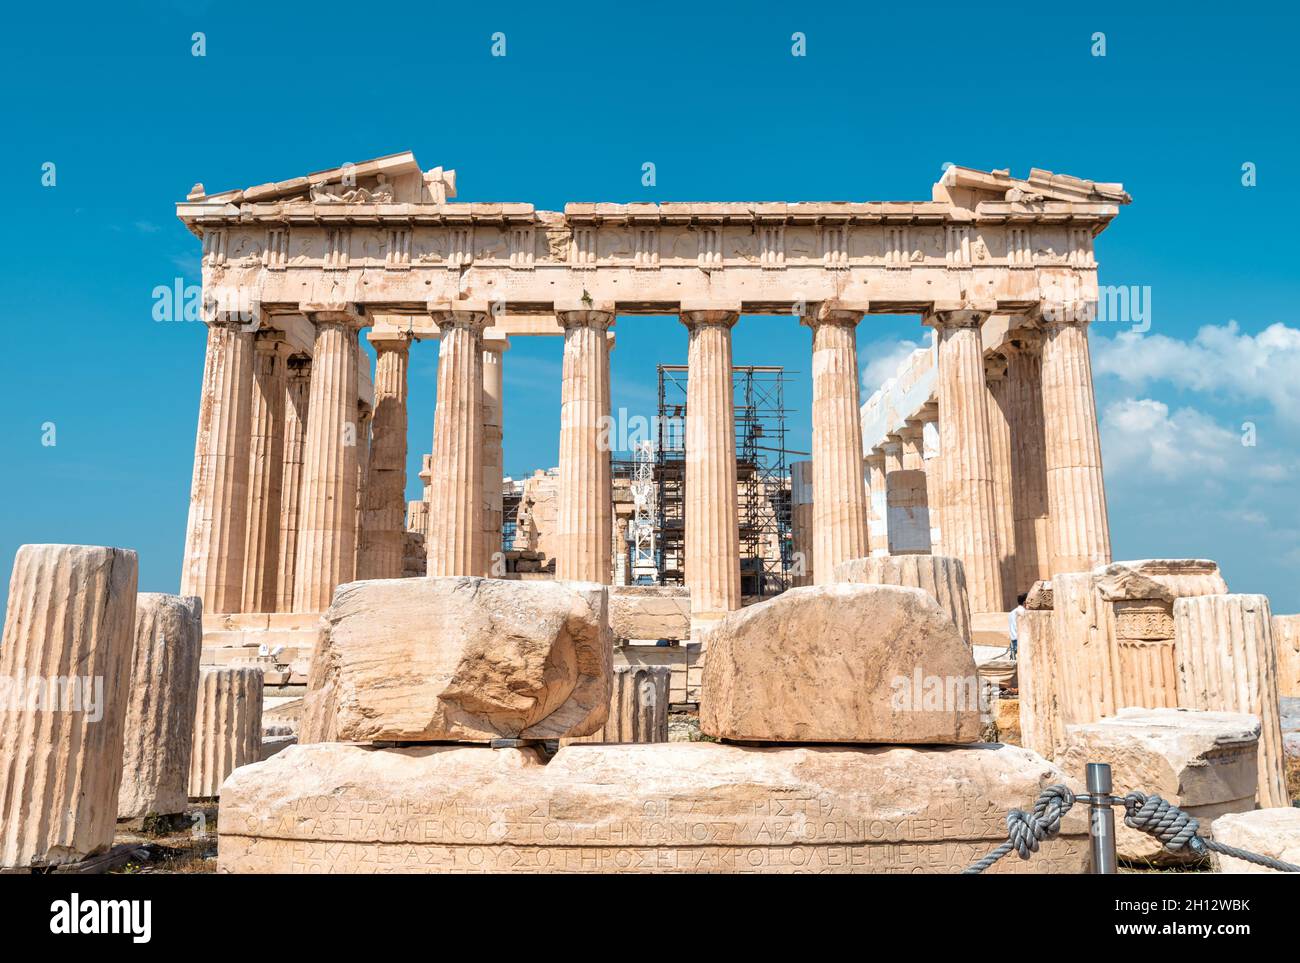 Parthenon auf der Akropolis, Athen, Griechenland. Es ist berühmte Touristenattraktion von Athen. Ruinen des klassischen Tempels von Athen auf dem Akropolis-Hügel. Ancie Stockfoto